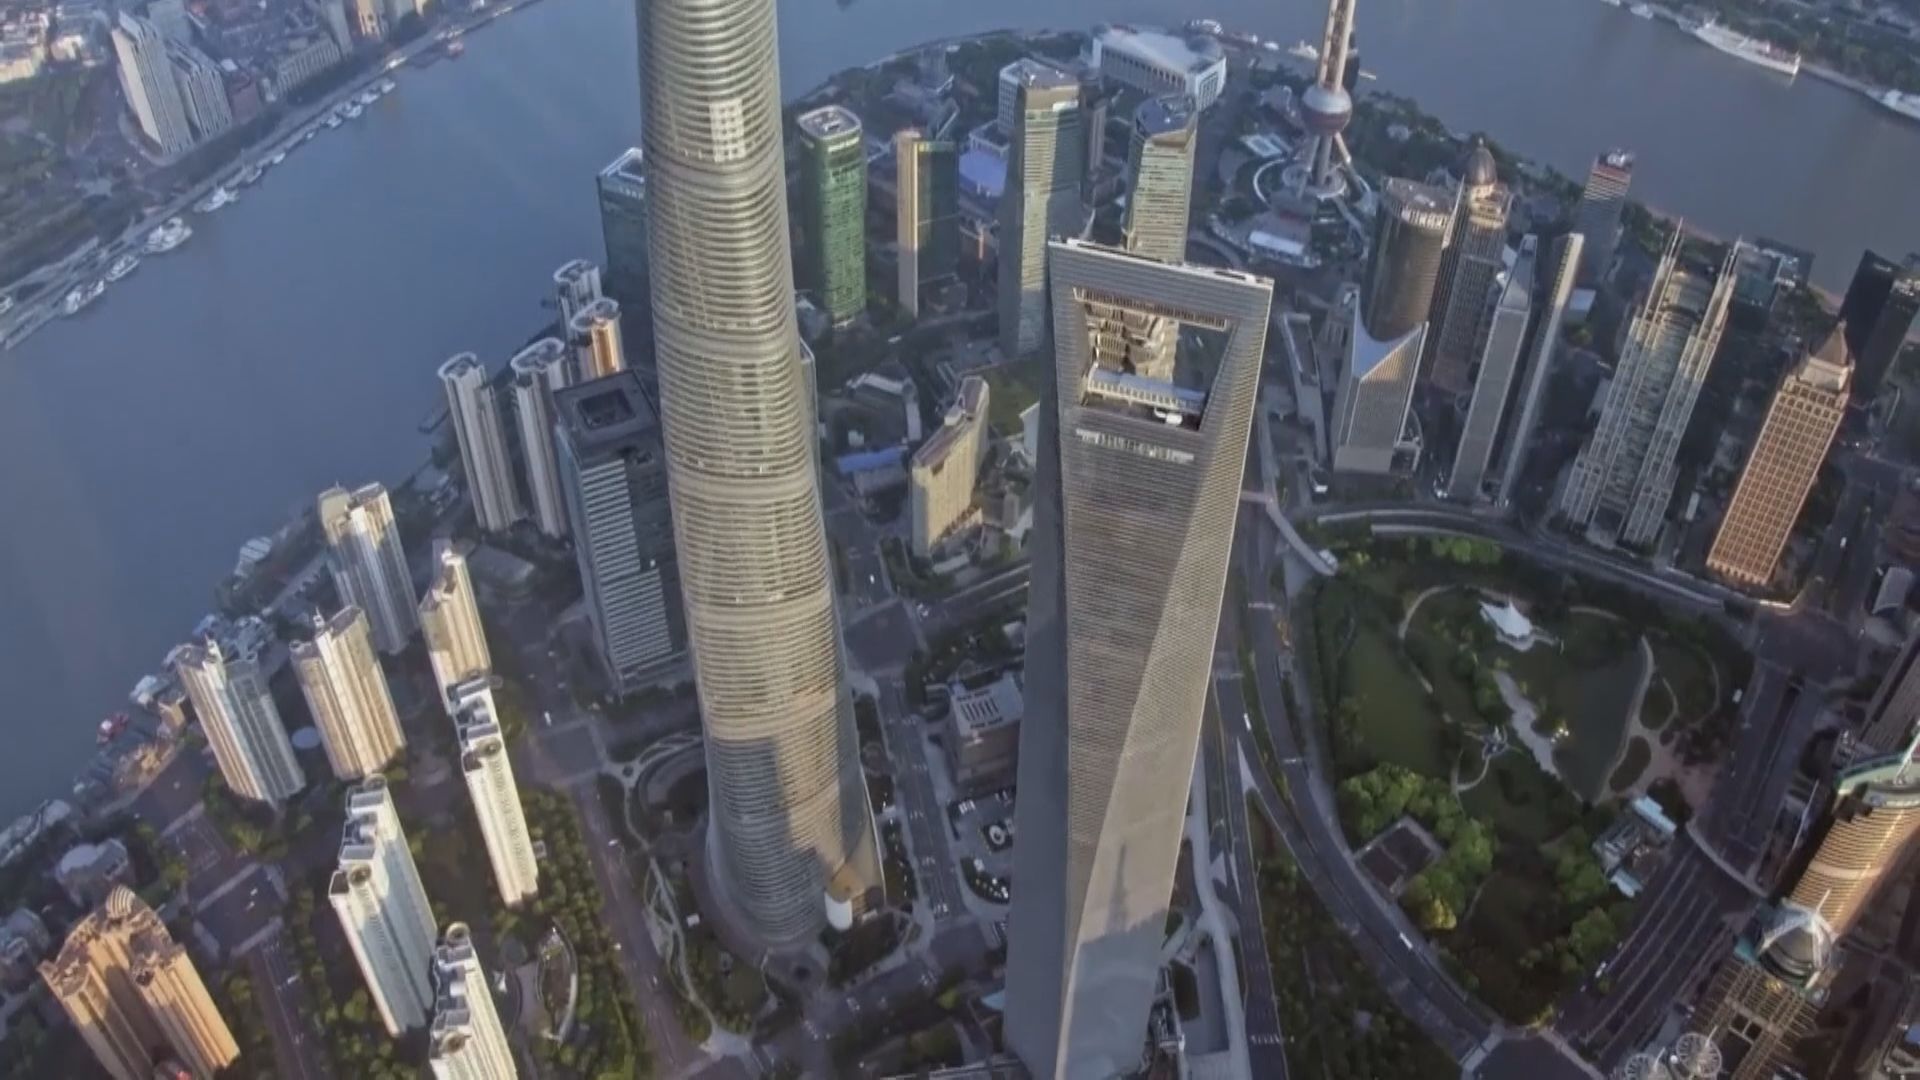 【曾流拍】上海環球金融中心71樓減價逾10%重推 底價3億人仔